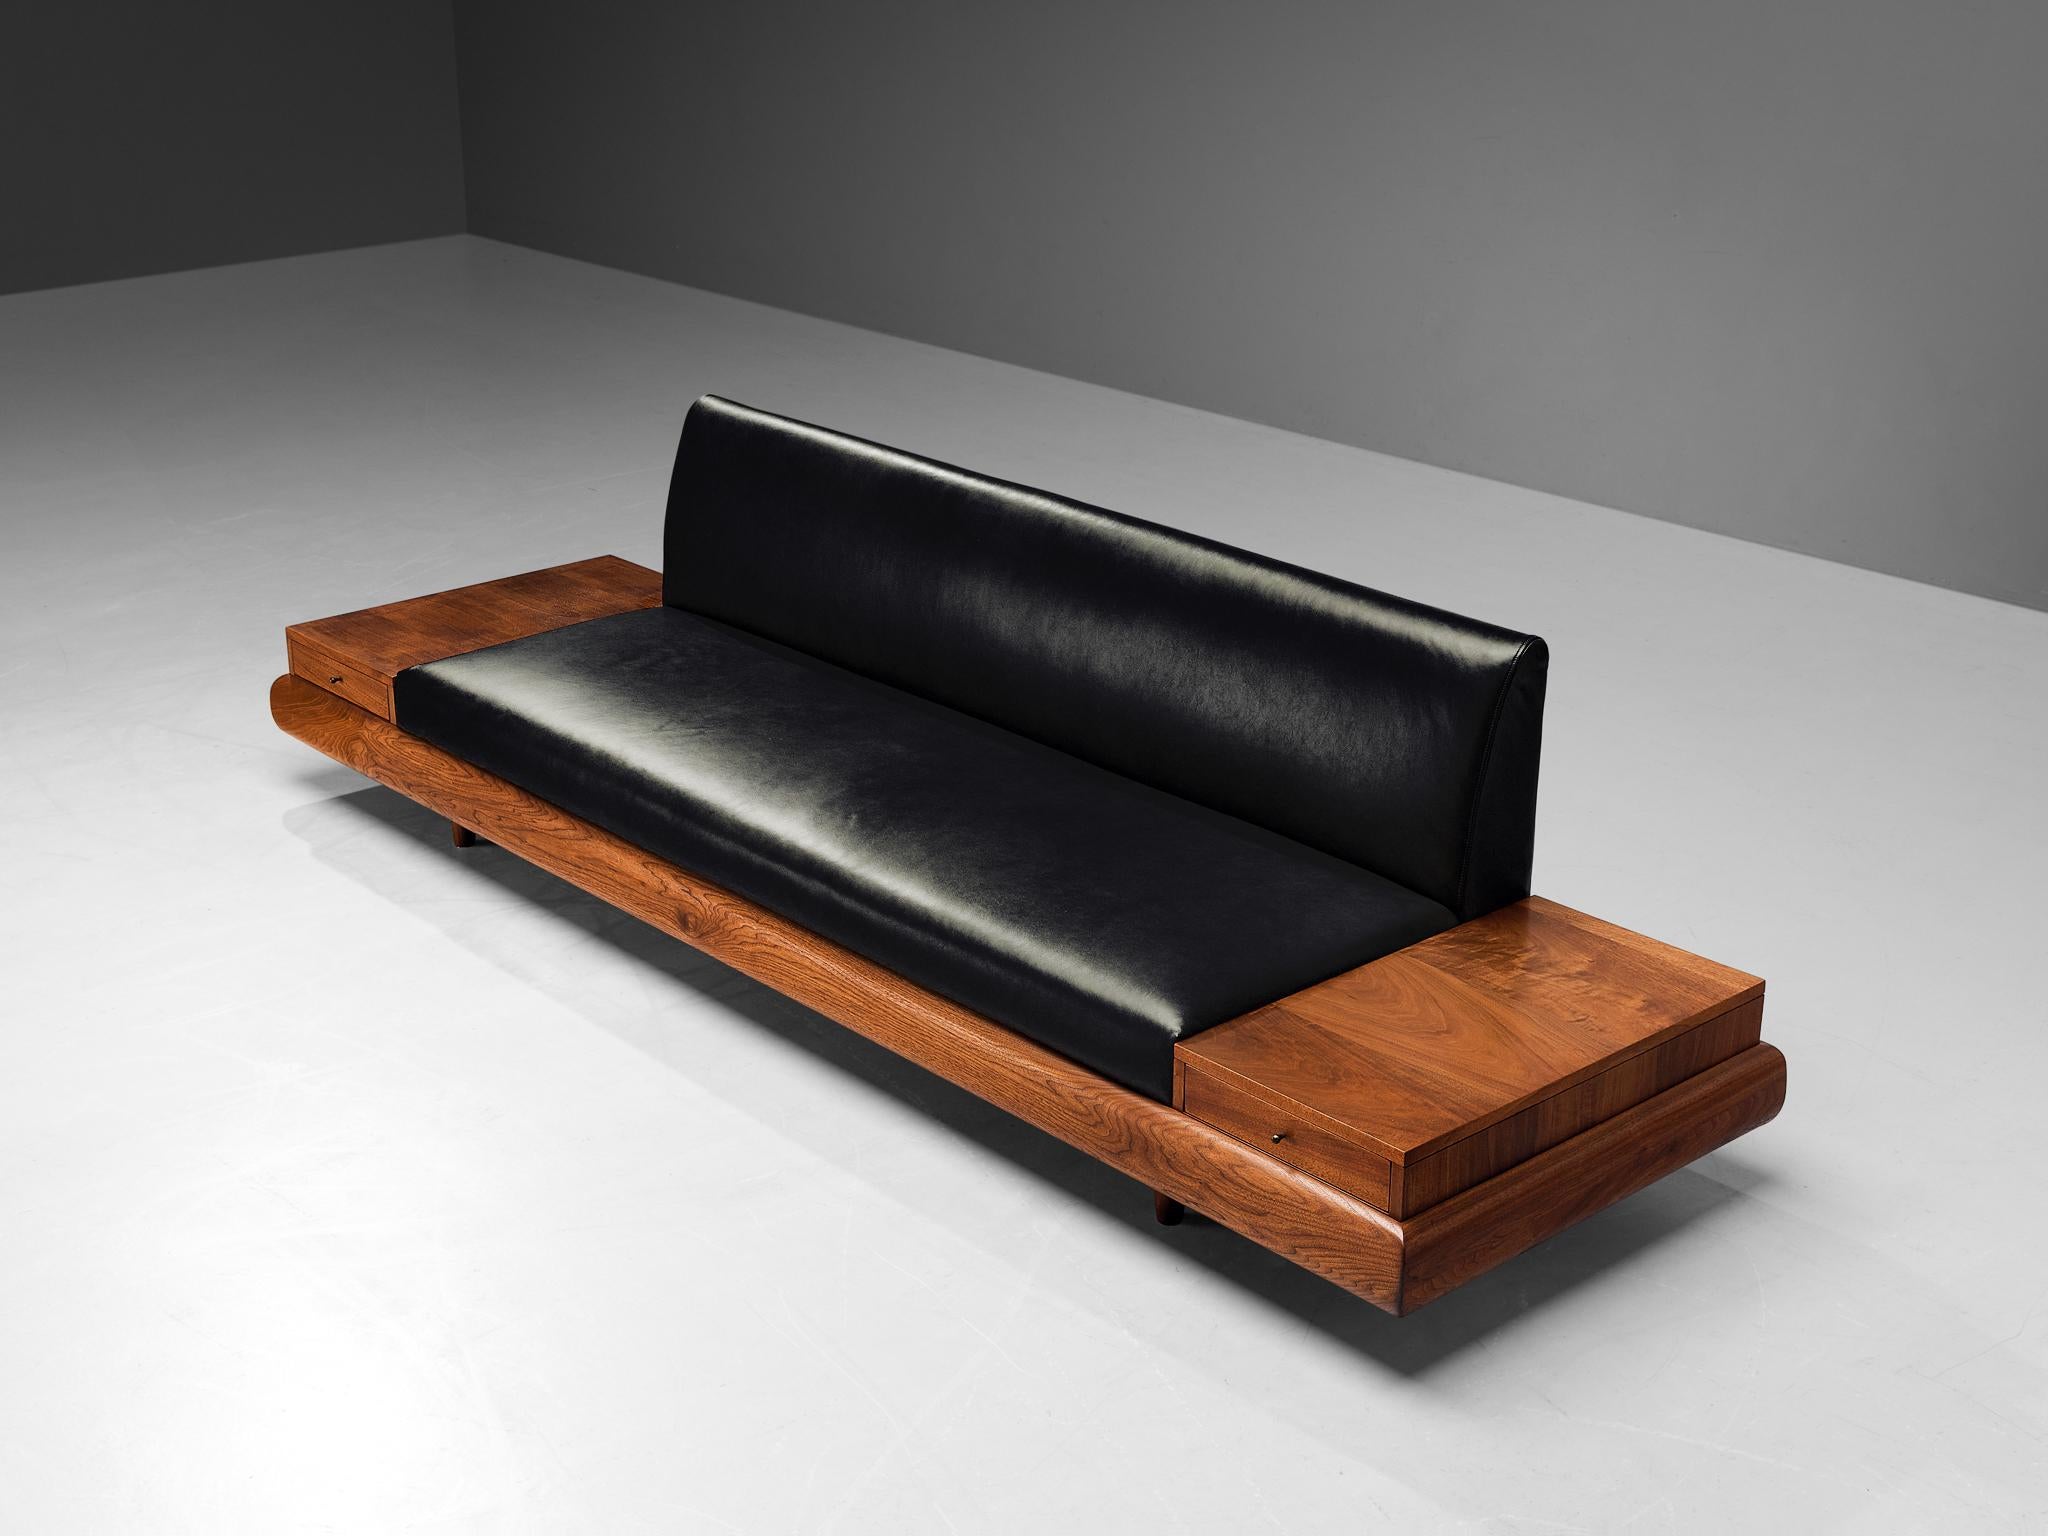 Adrian Pearsall, 'Platform' Sofa mit zwei Schubladen, Modell 1709-S, Lederbezug, Nussbaum, Vereinigte Staaten, 1960er Jahre

Adrian Pearsall ist bekannt für seine einzigartigen Sofadesigns. Die 1709-S